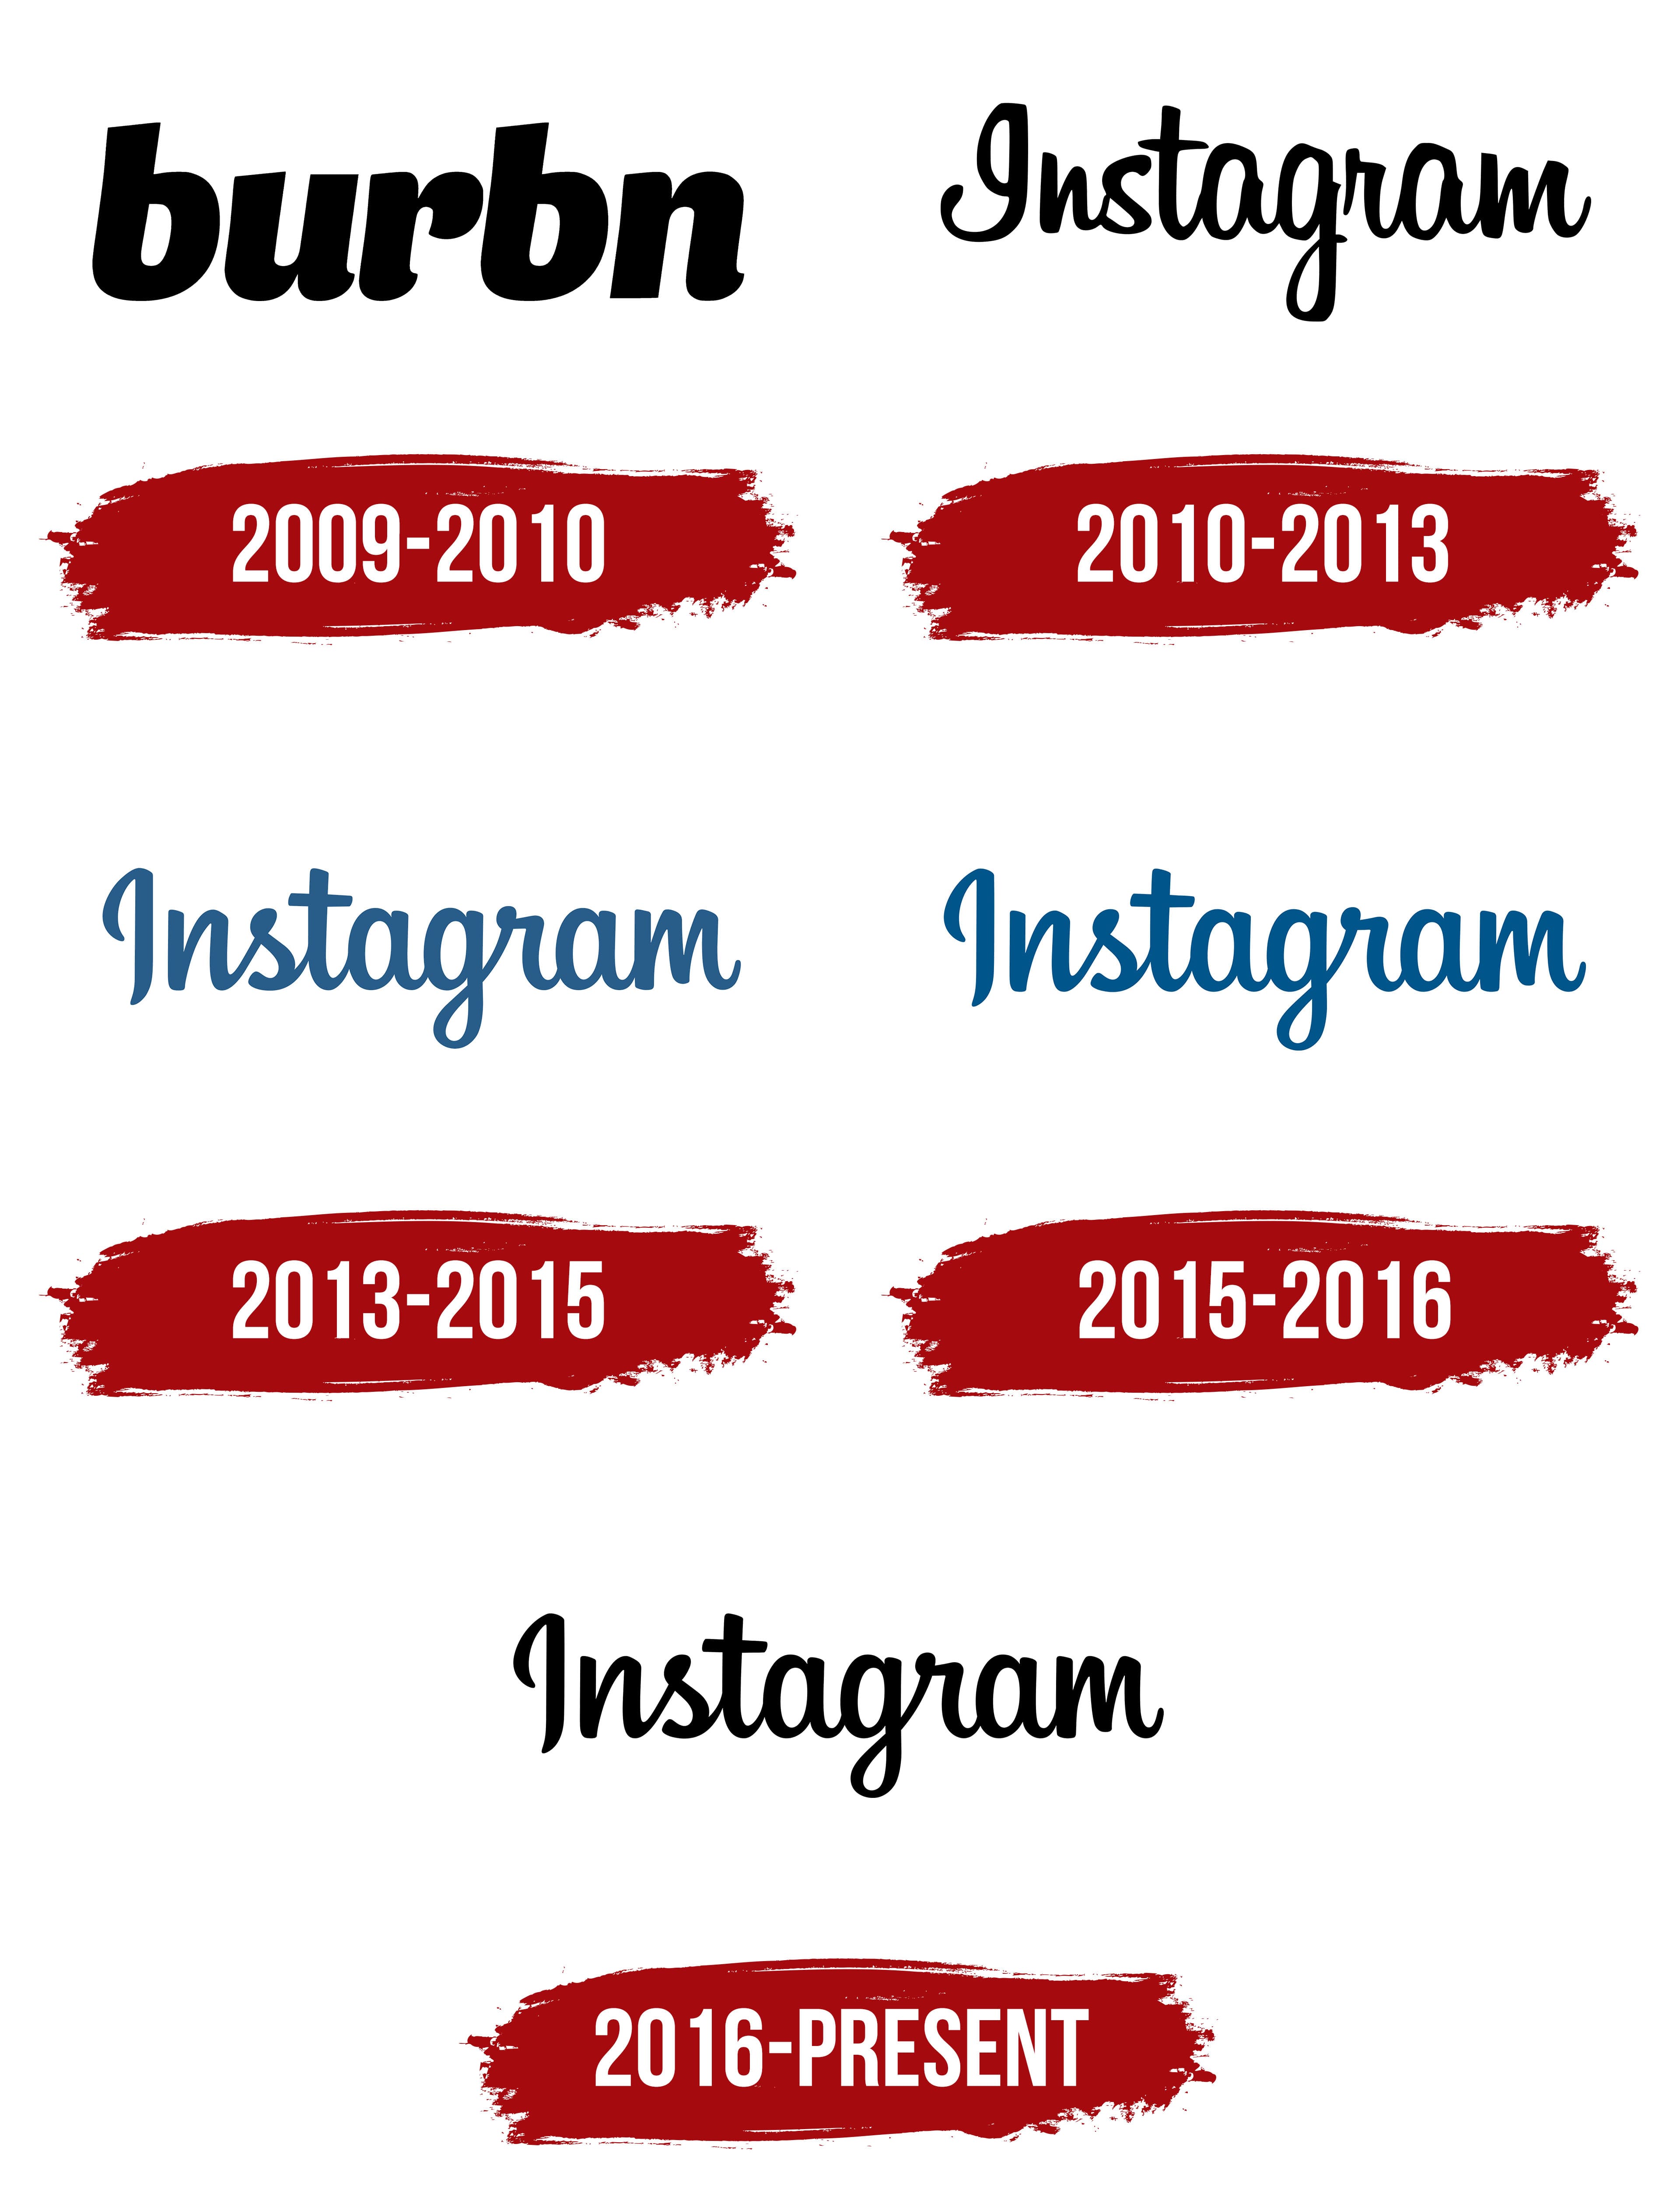 Instagram Logo PNG Transparent Images Free Download | Vector Files | Pngtree